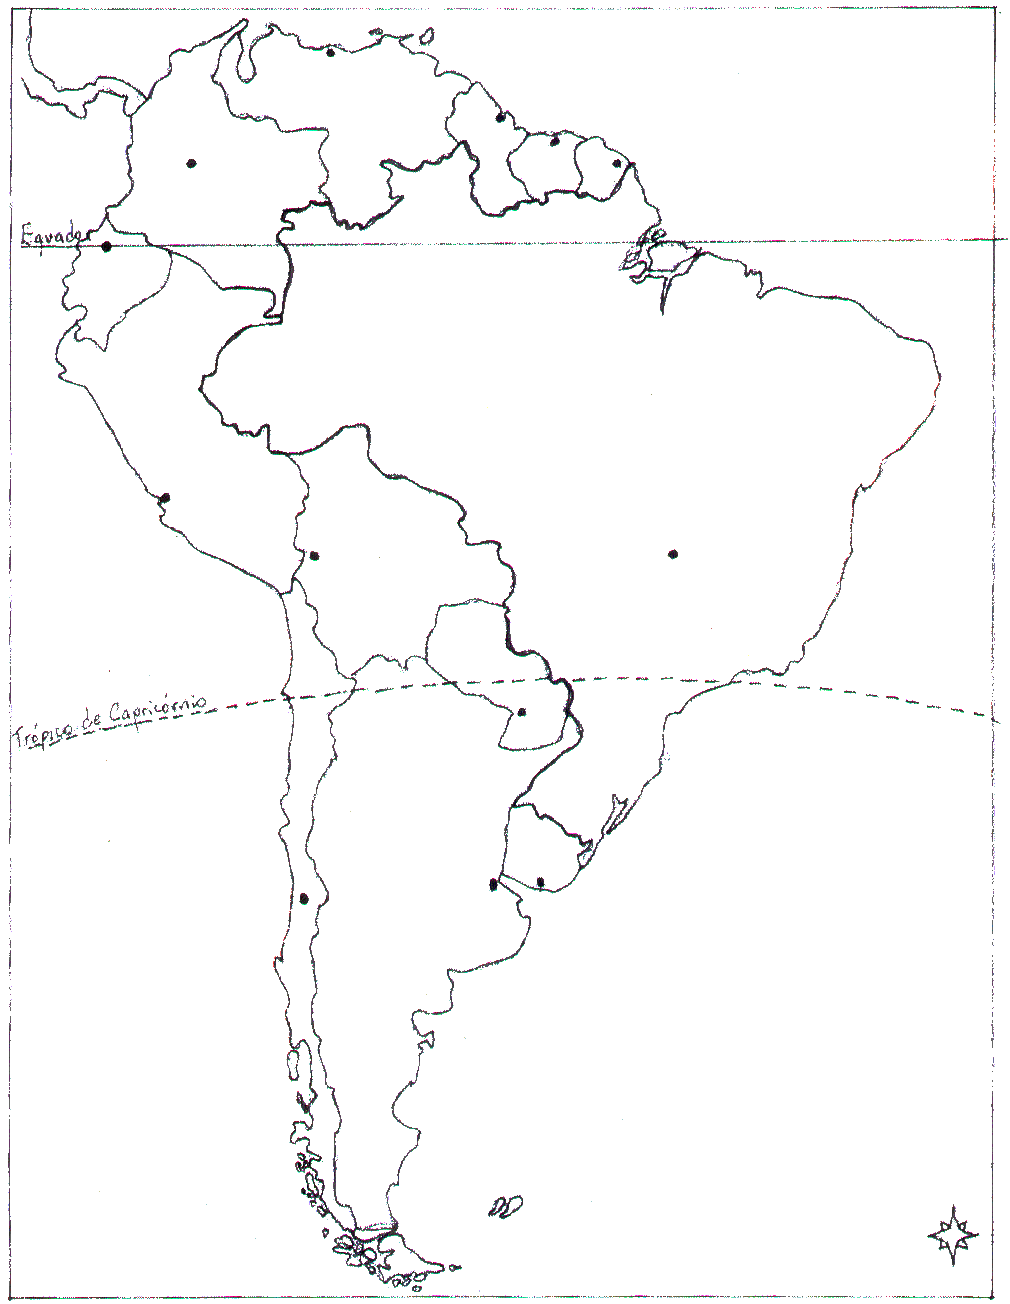 Mapa Do Brasil Na America Do Sul Para Colorir â Pampekids Net